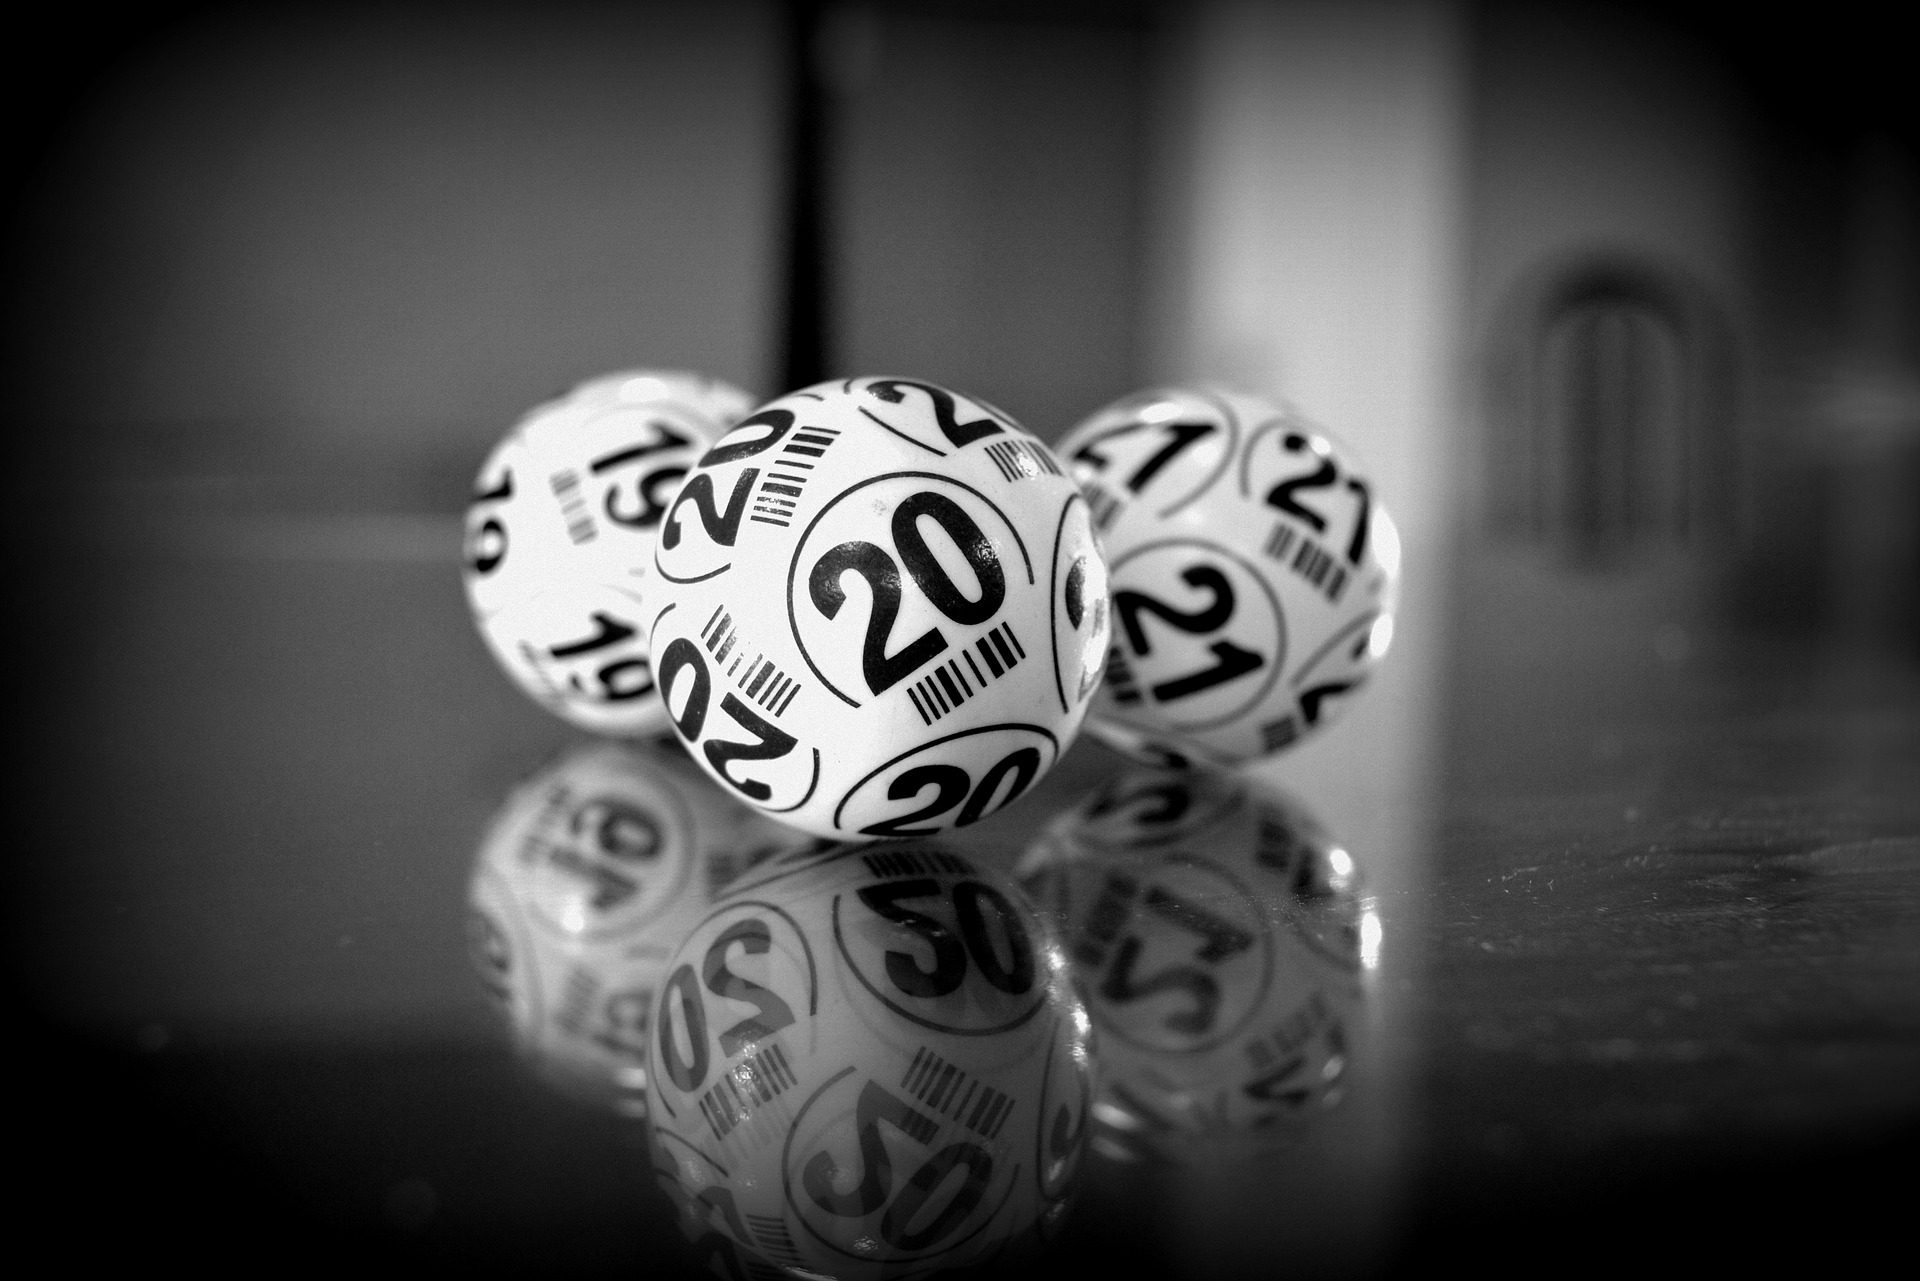 Bingo sweepstakes windfall ball lottery